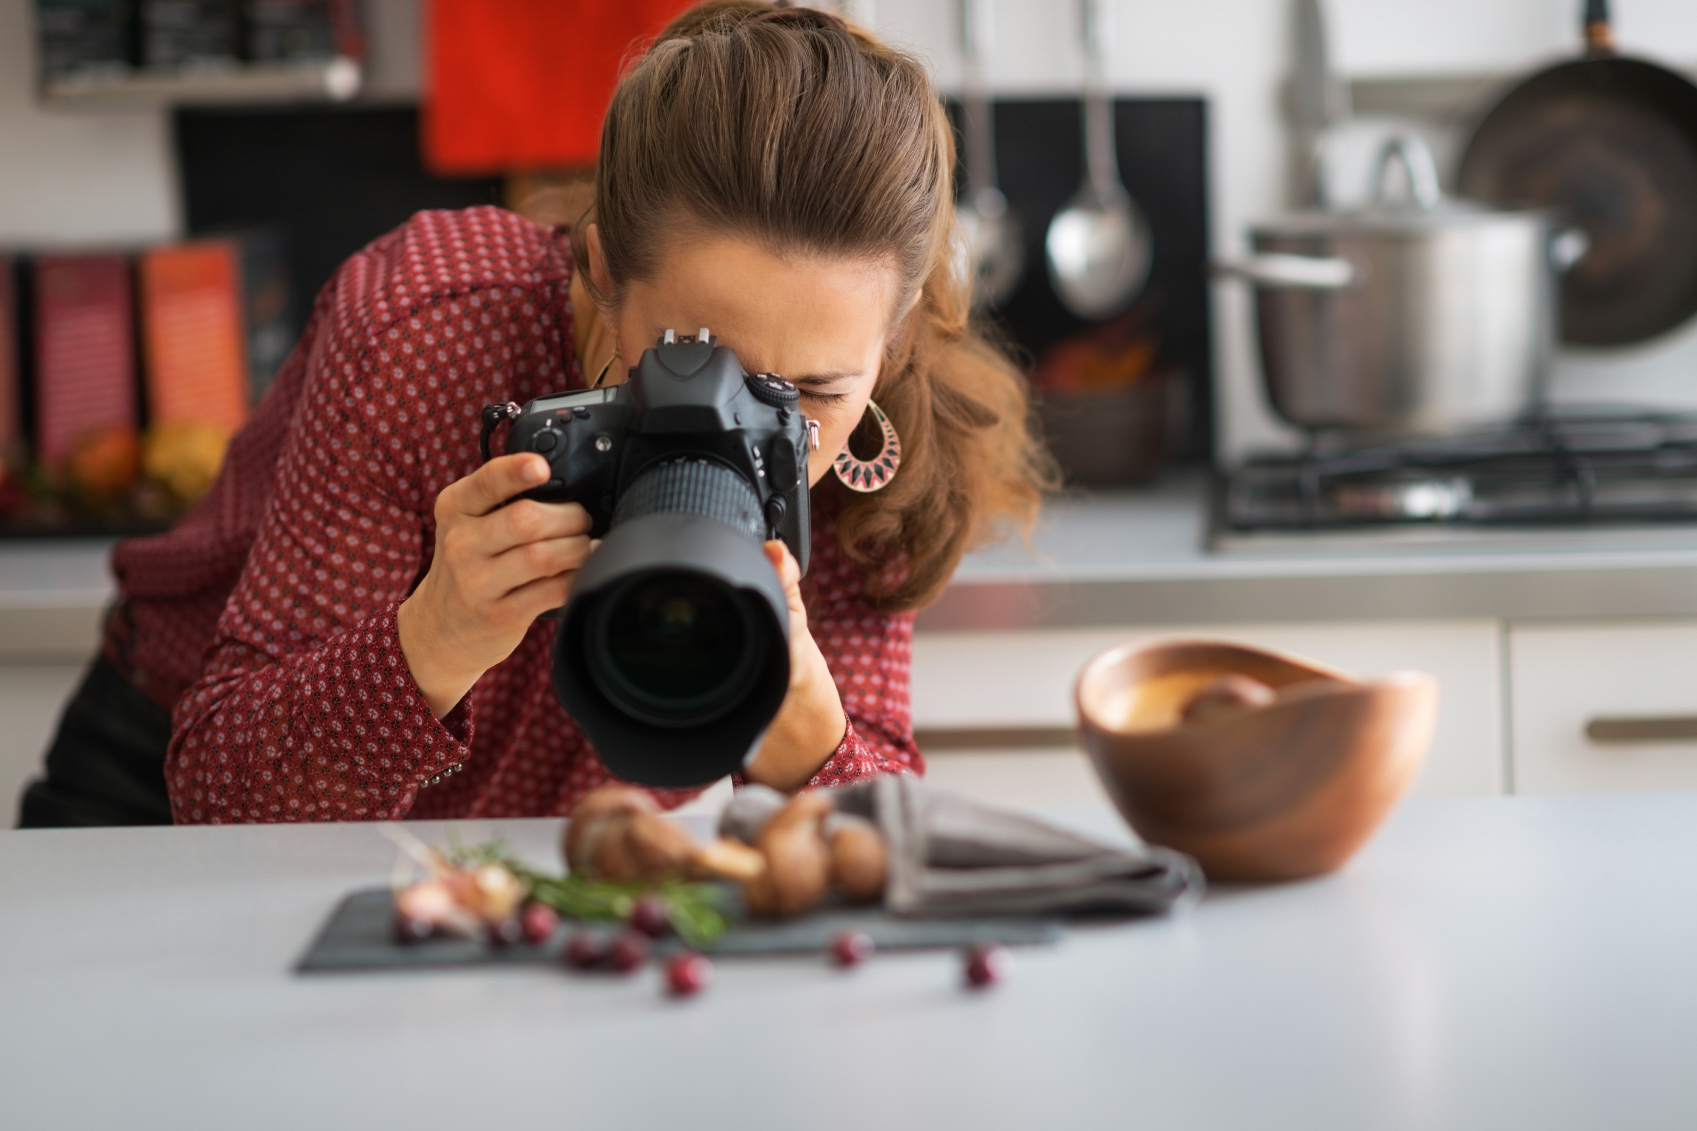 Сделай фотограф. Фуд фотограф. Фотосъемка еды. Девушка фотографирует еду. Человек фотографирует еду.